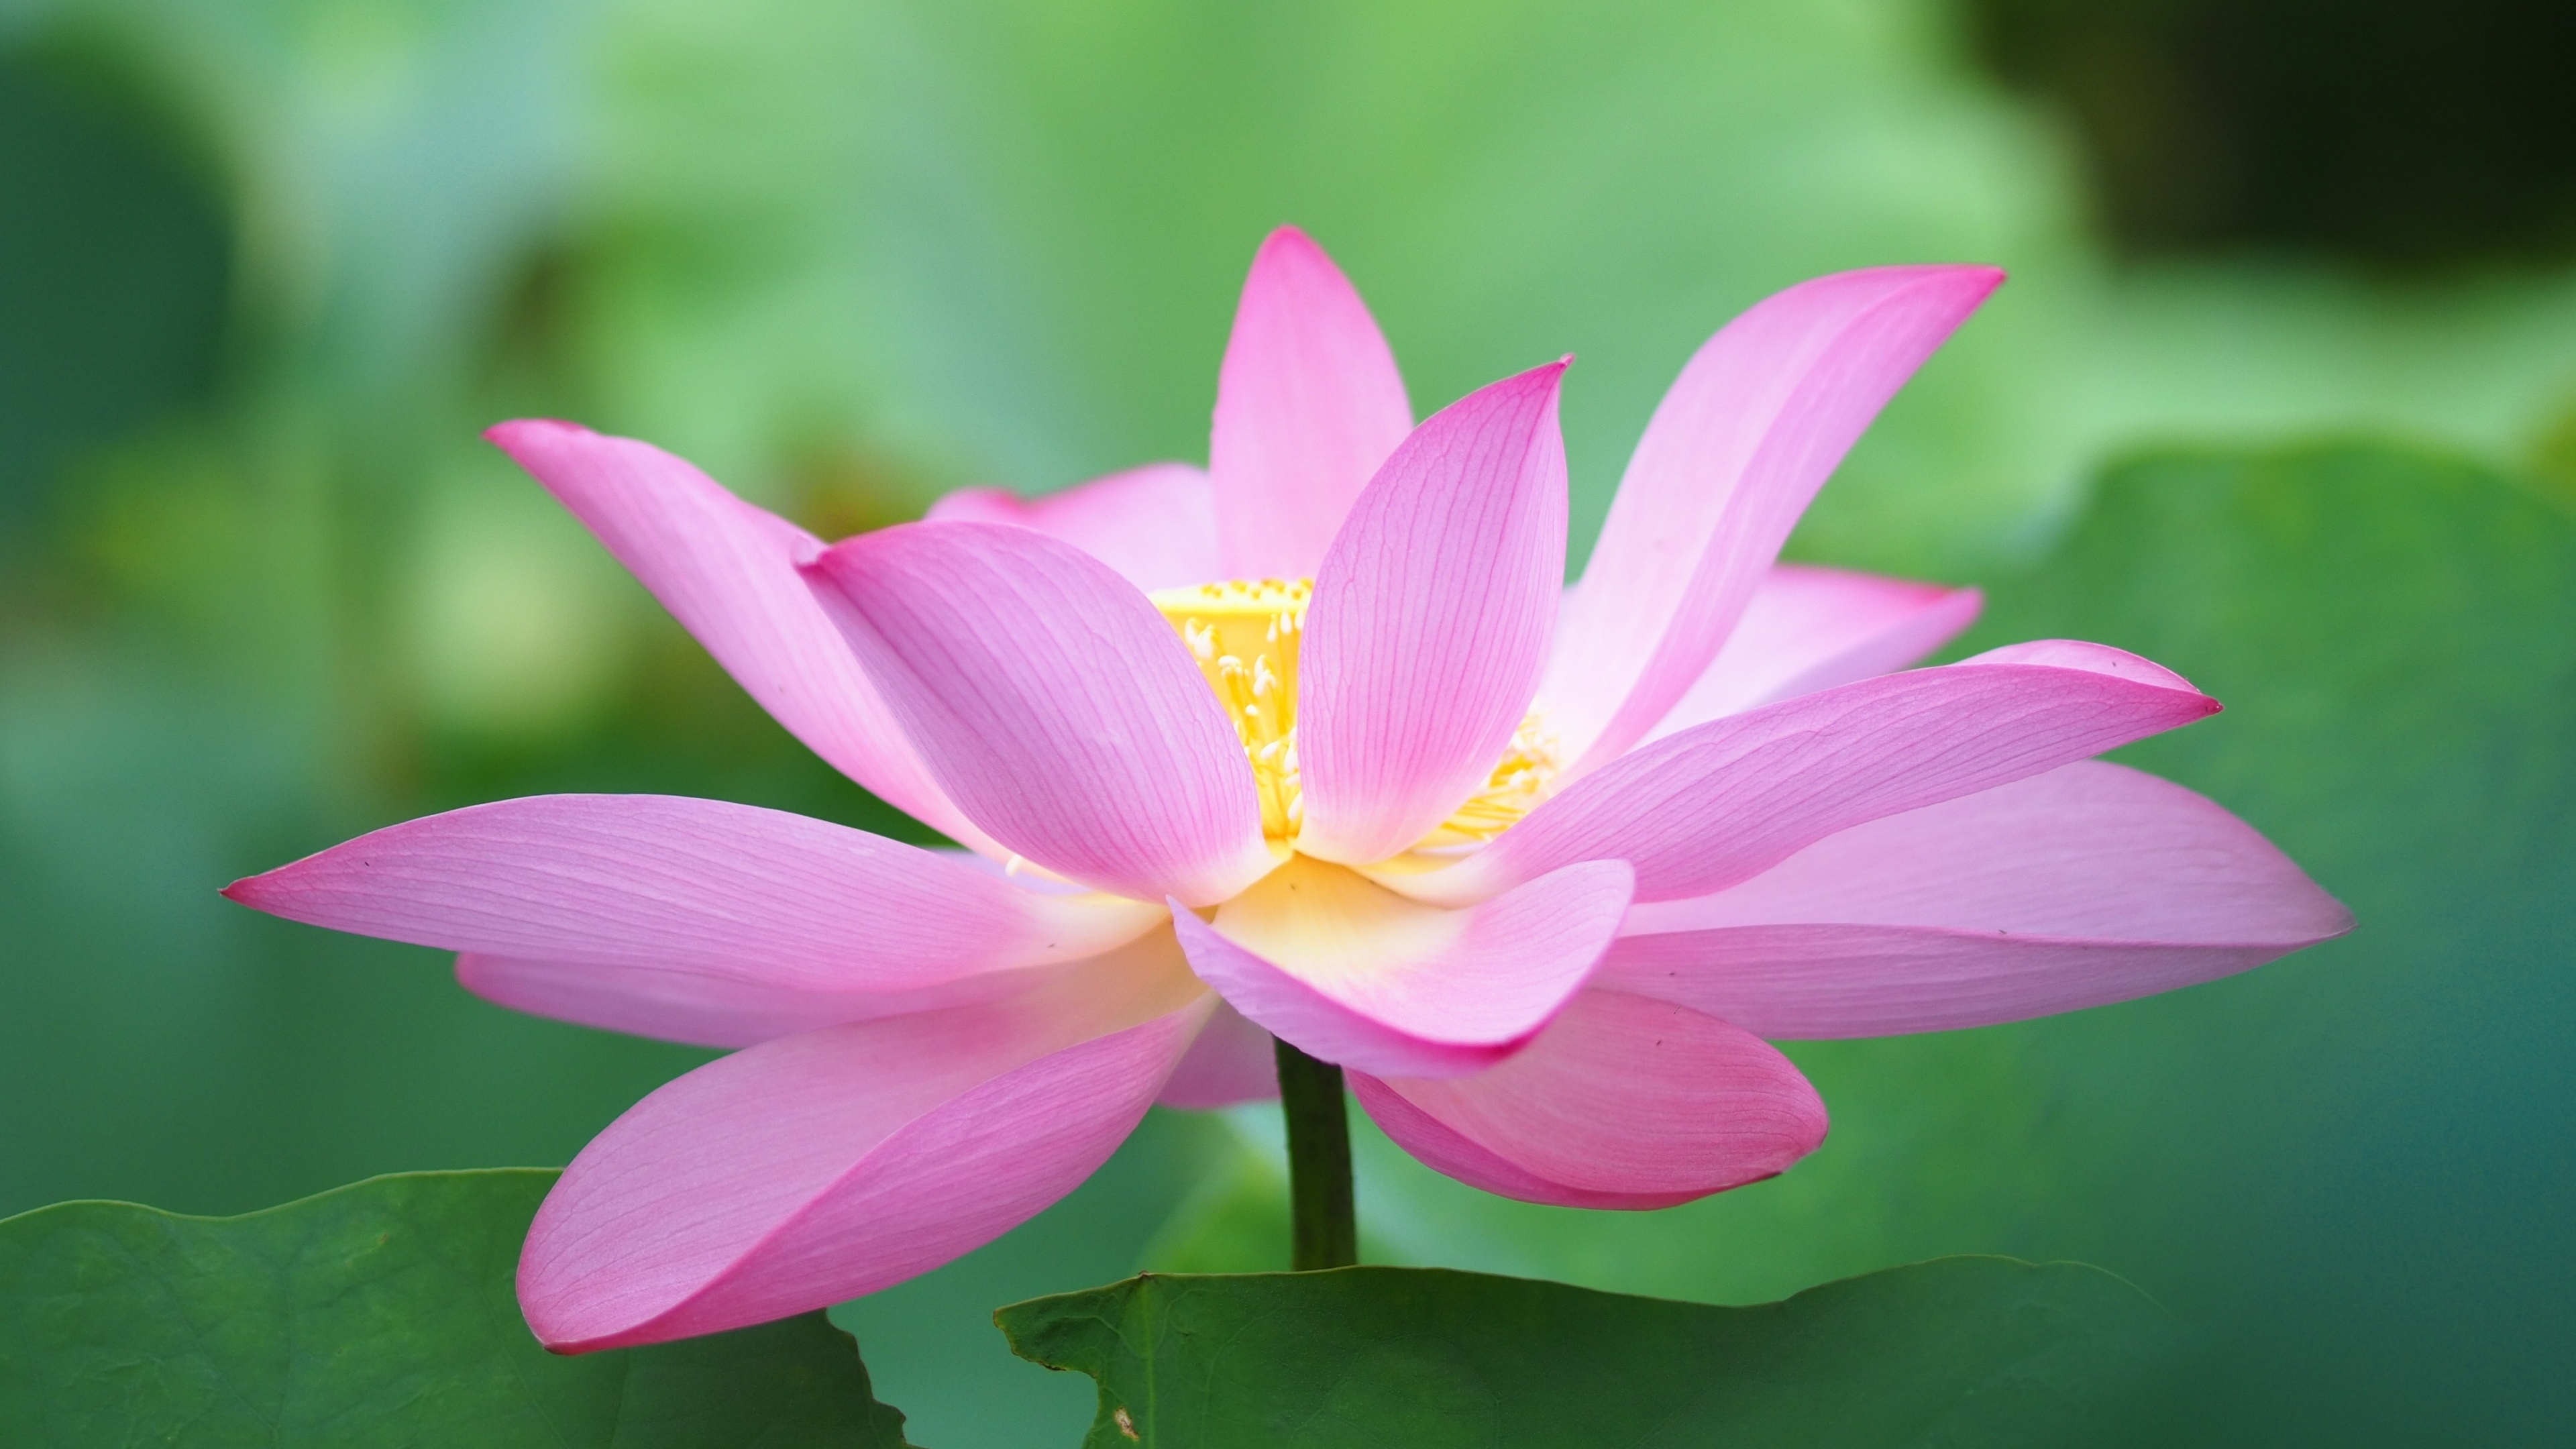 Botanic flora, Lotus bloom 4K wallpaper, 3840x2160 4K Desktop